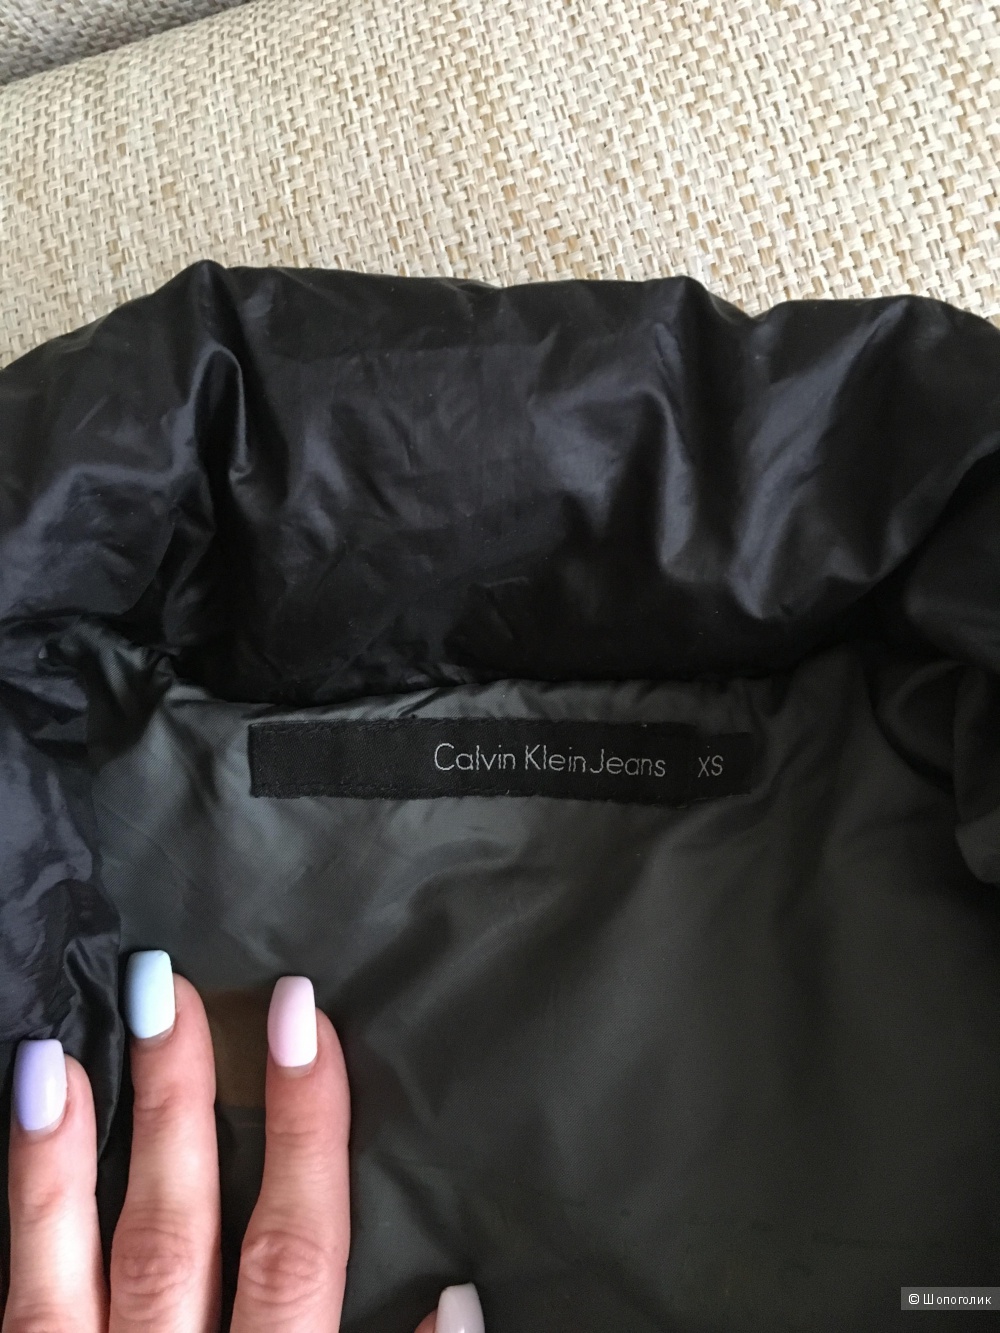 Пуховое пальто Calvin Klein Jeans, размер хs